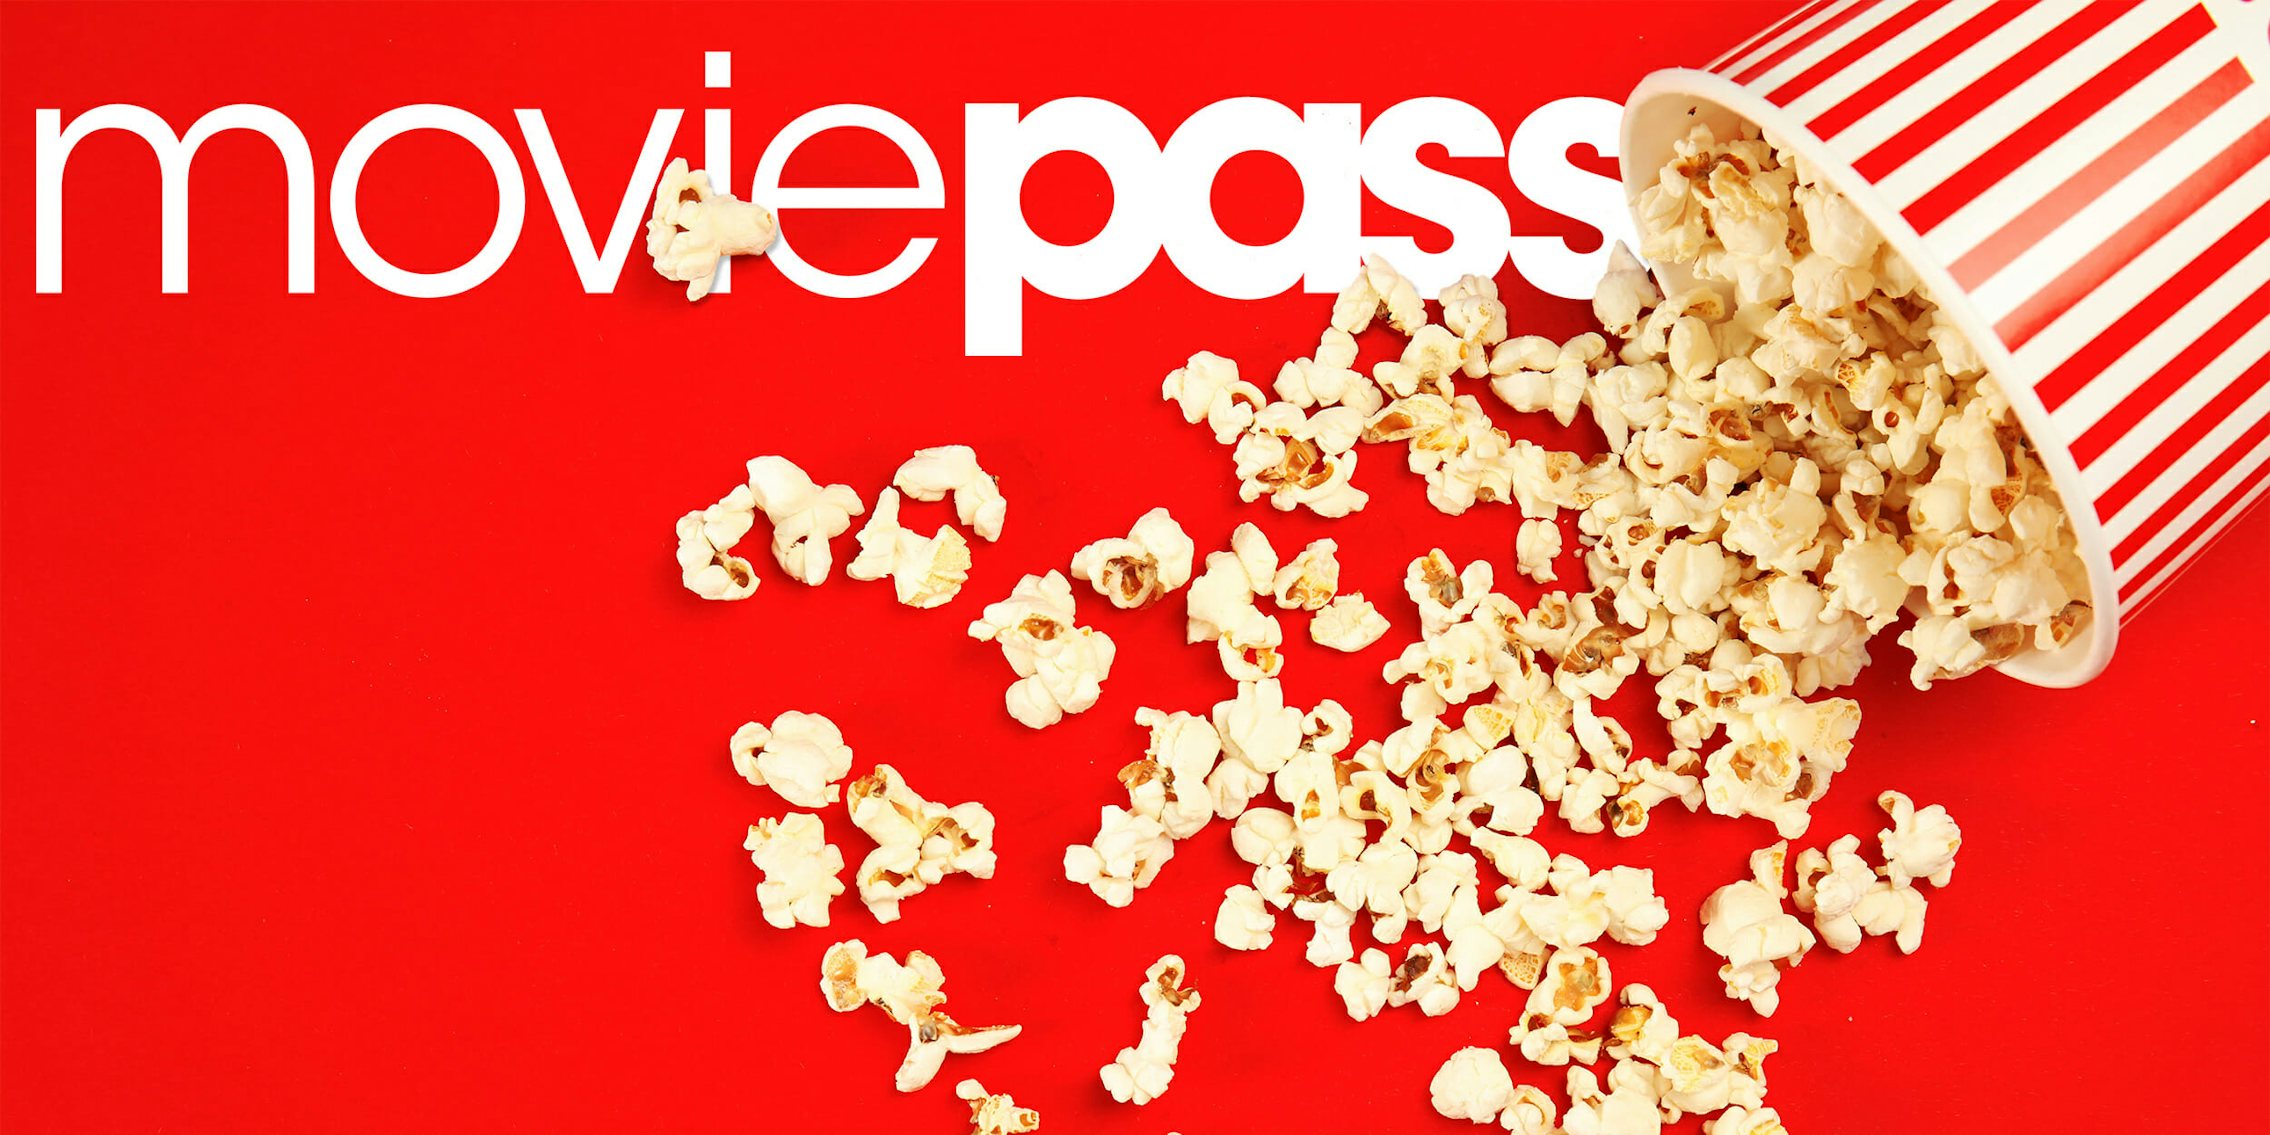 moviepass logo under spilled popcorn